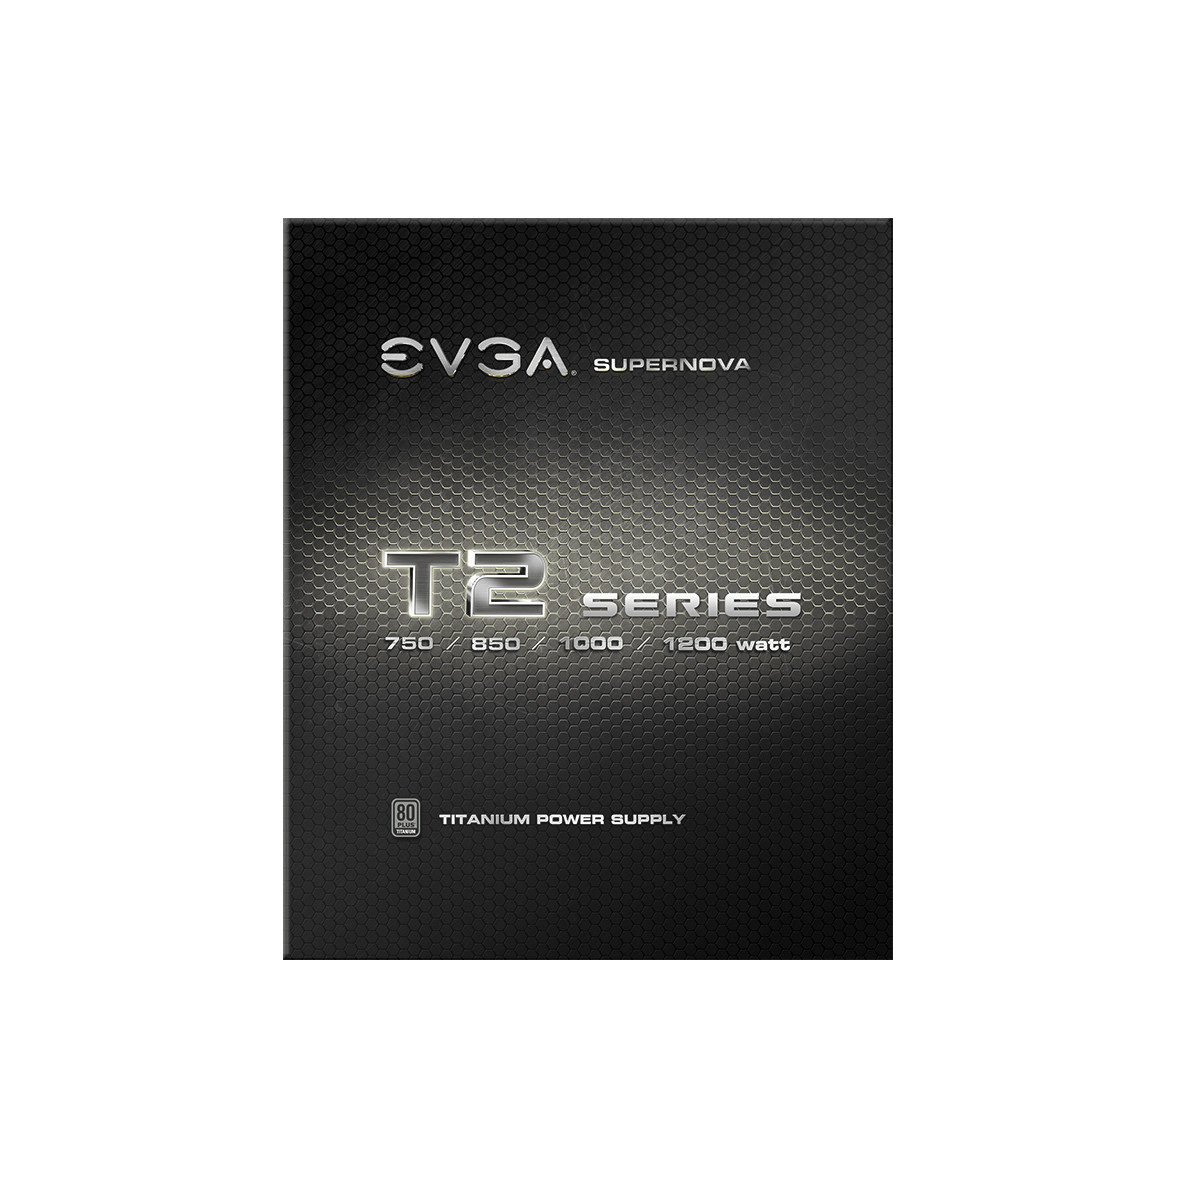 EVGA - Products - EVGA SuperNOVA 850 T2, 80+ TITANIUM 850W, Fully 